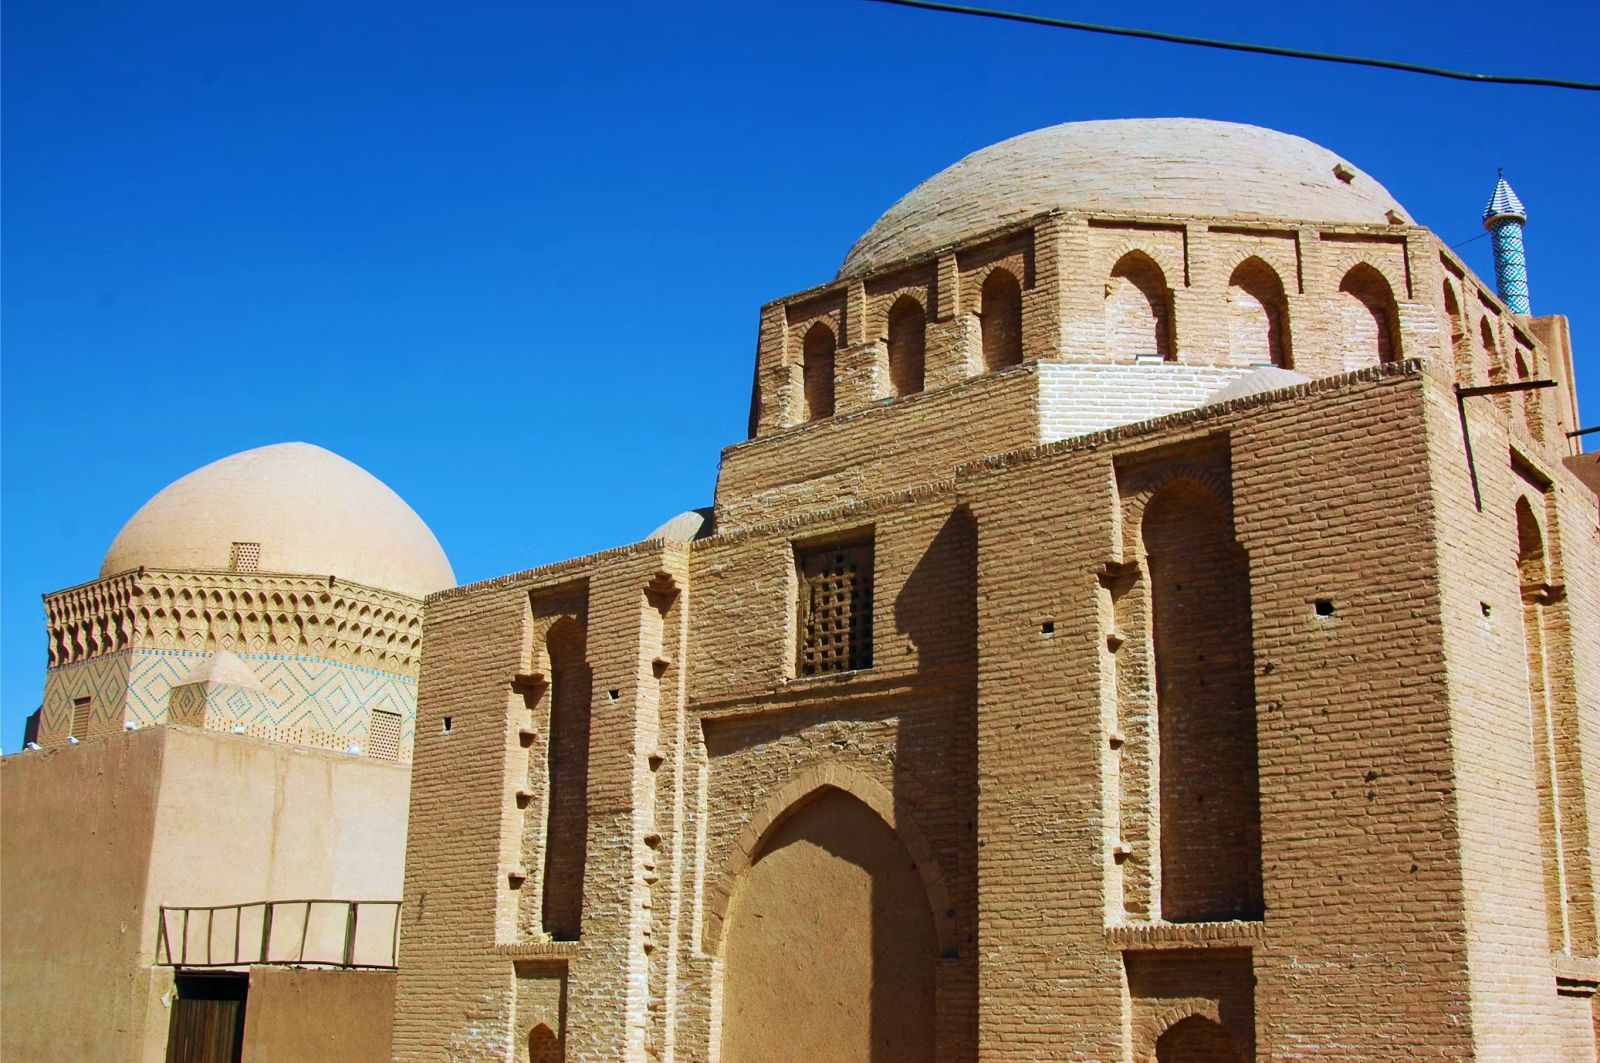  Tháp đón gió - tuyệt tác kiến trúc của thành phố sa mạc Yazd  - Ảnh 8.